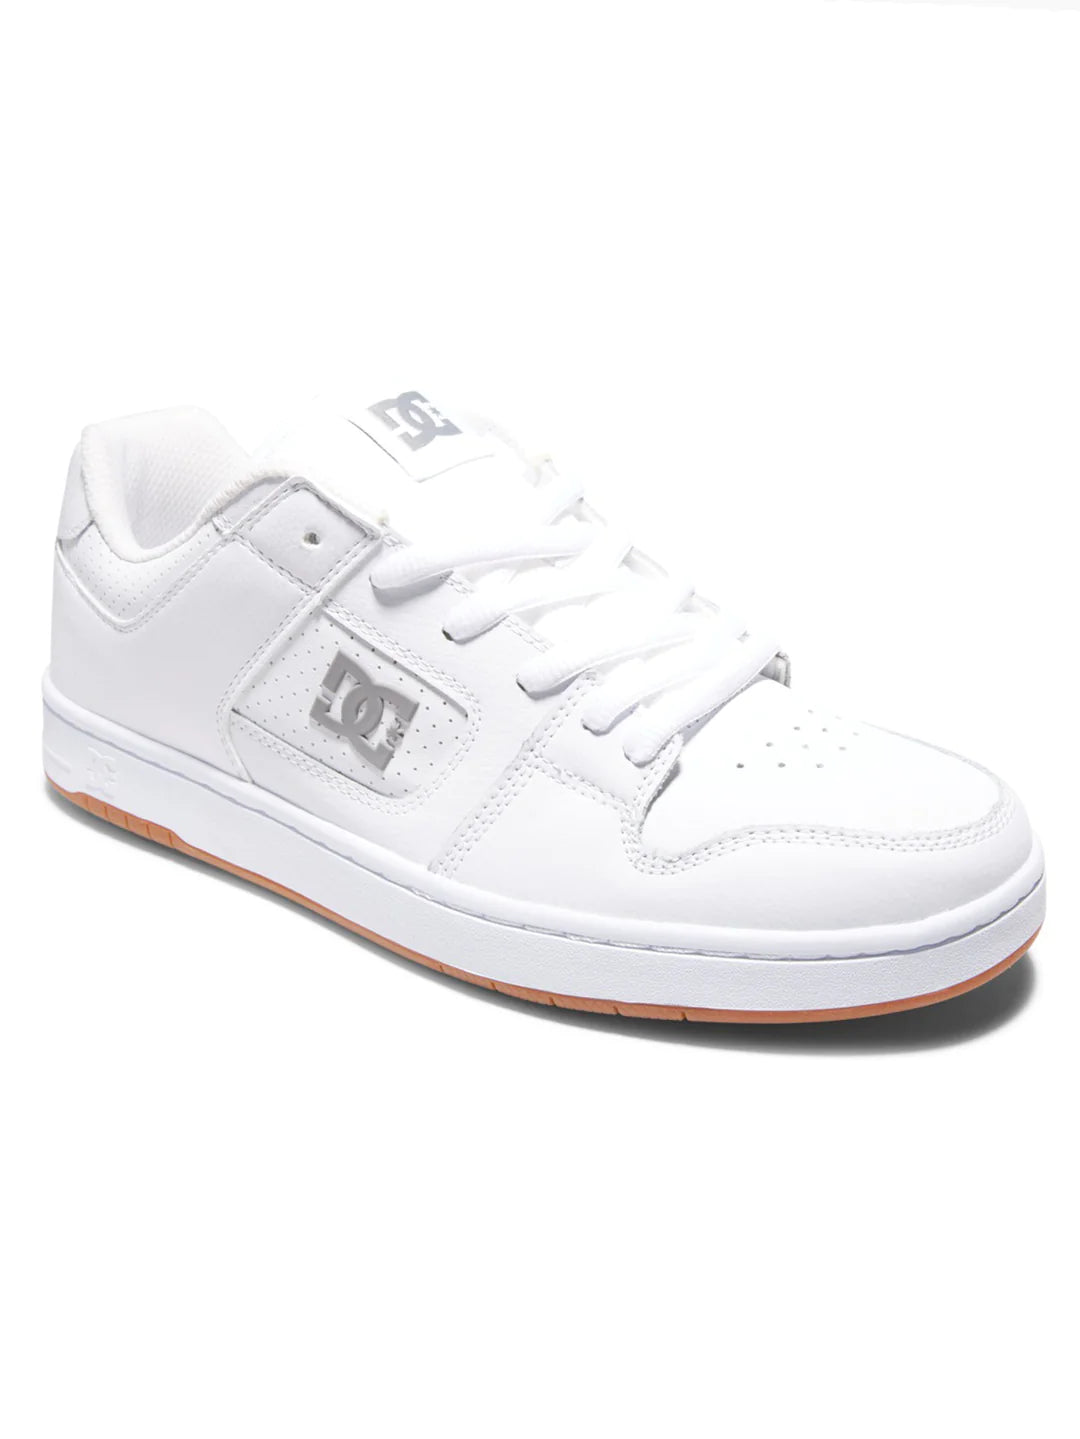 DC Shoes - Manteca 4 White